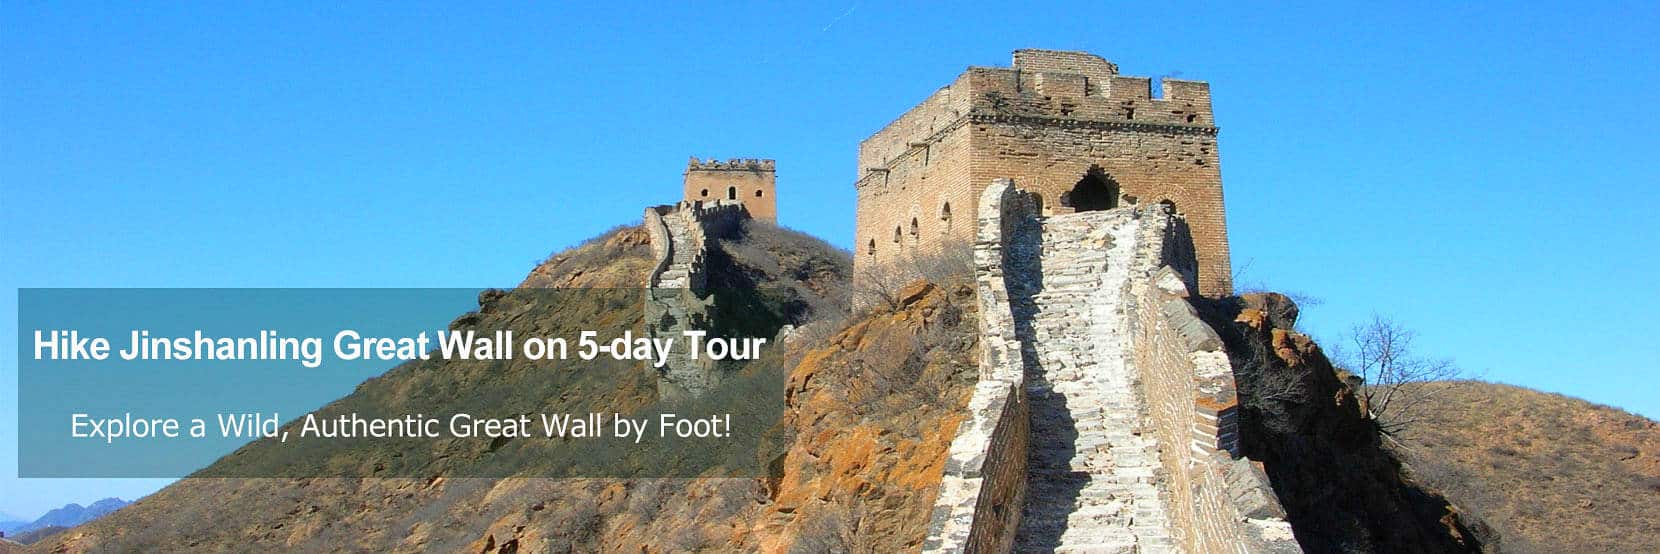 Beijing Jinshanling Great Wall Hiking Tour